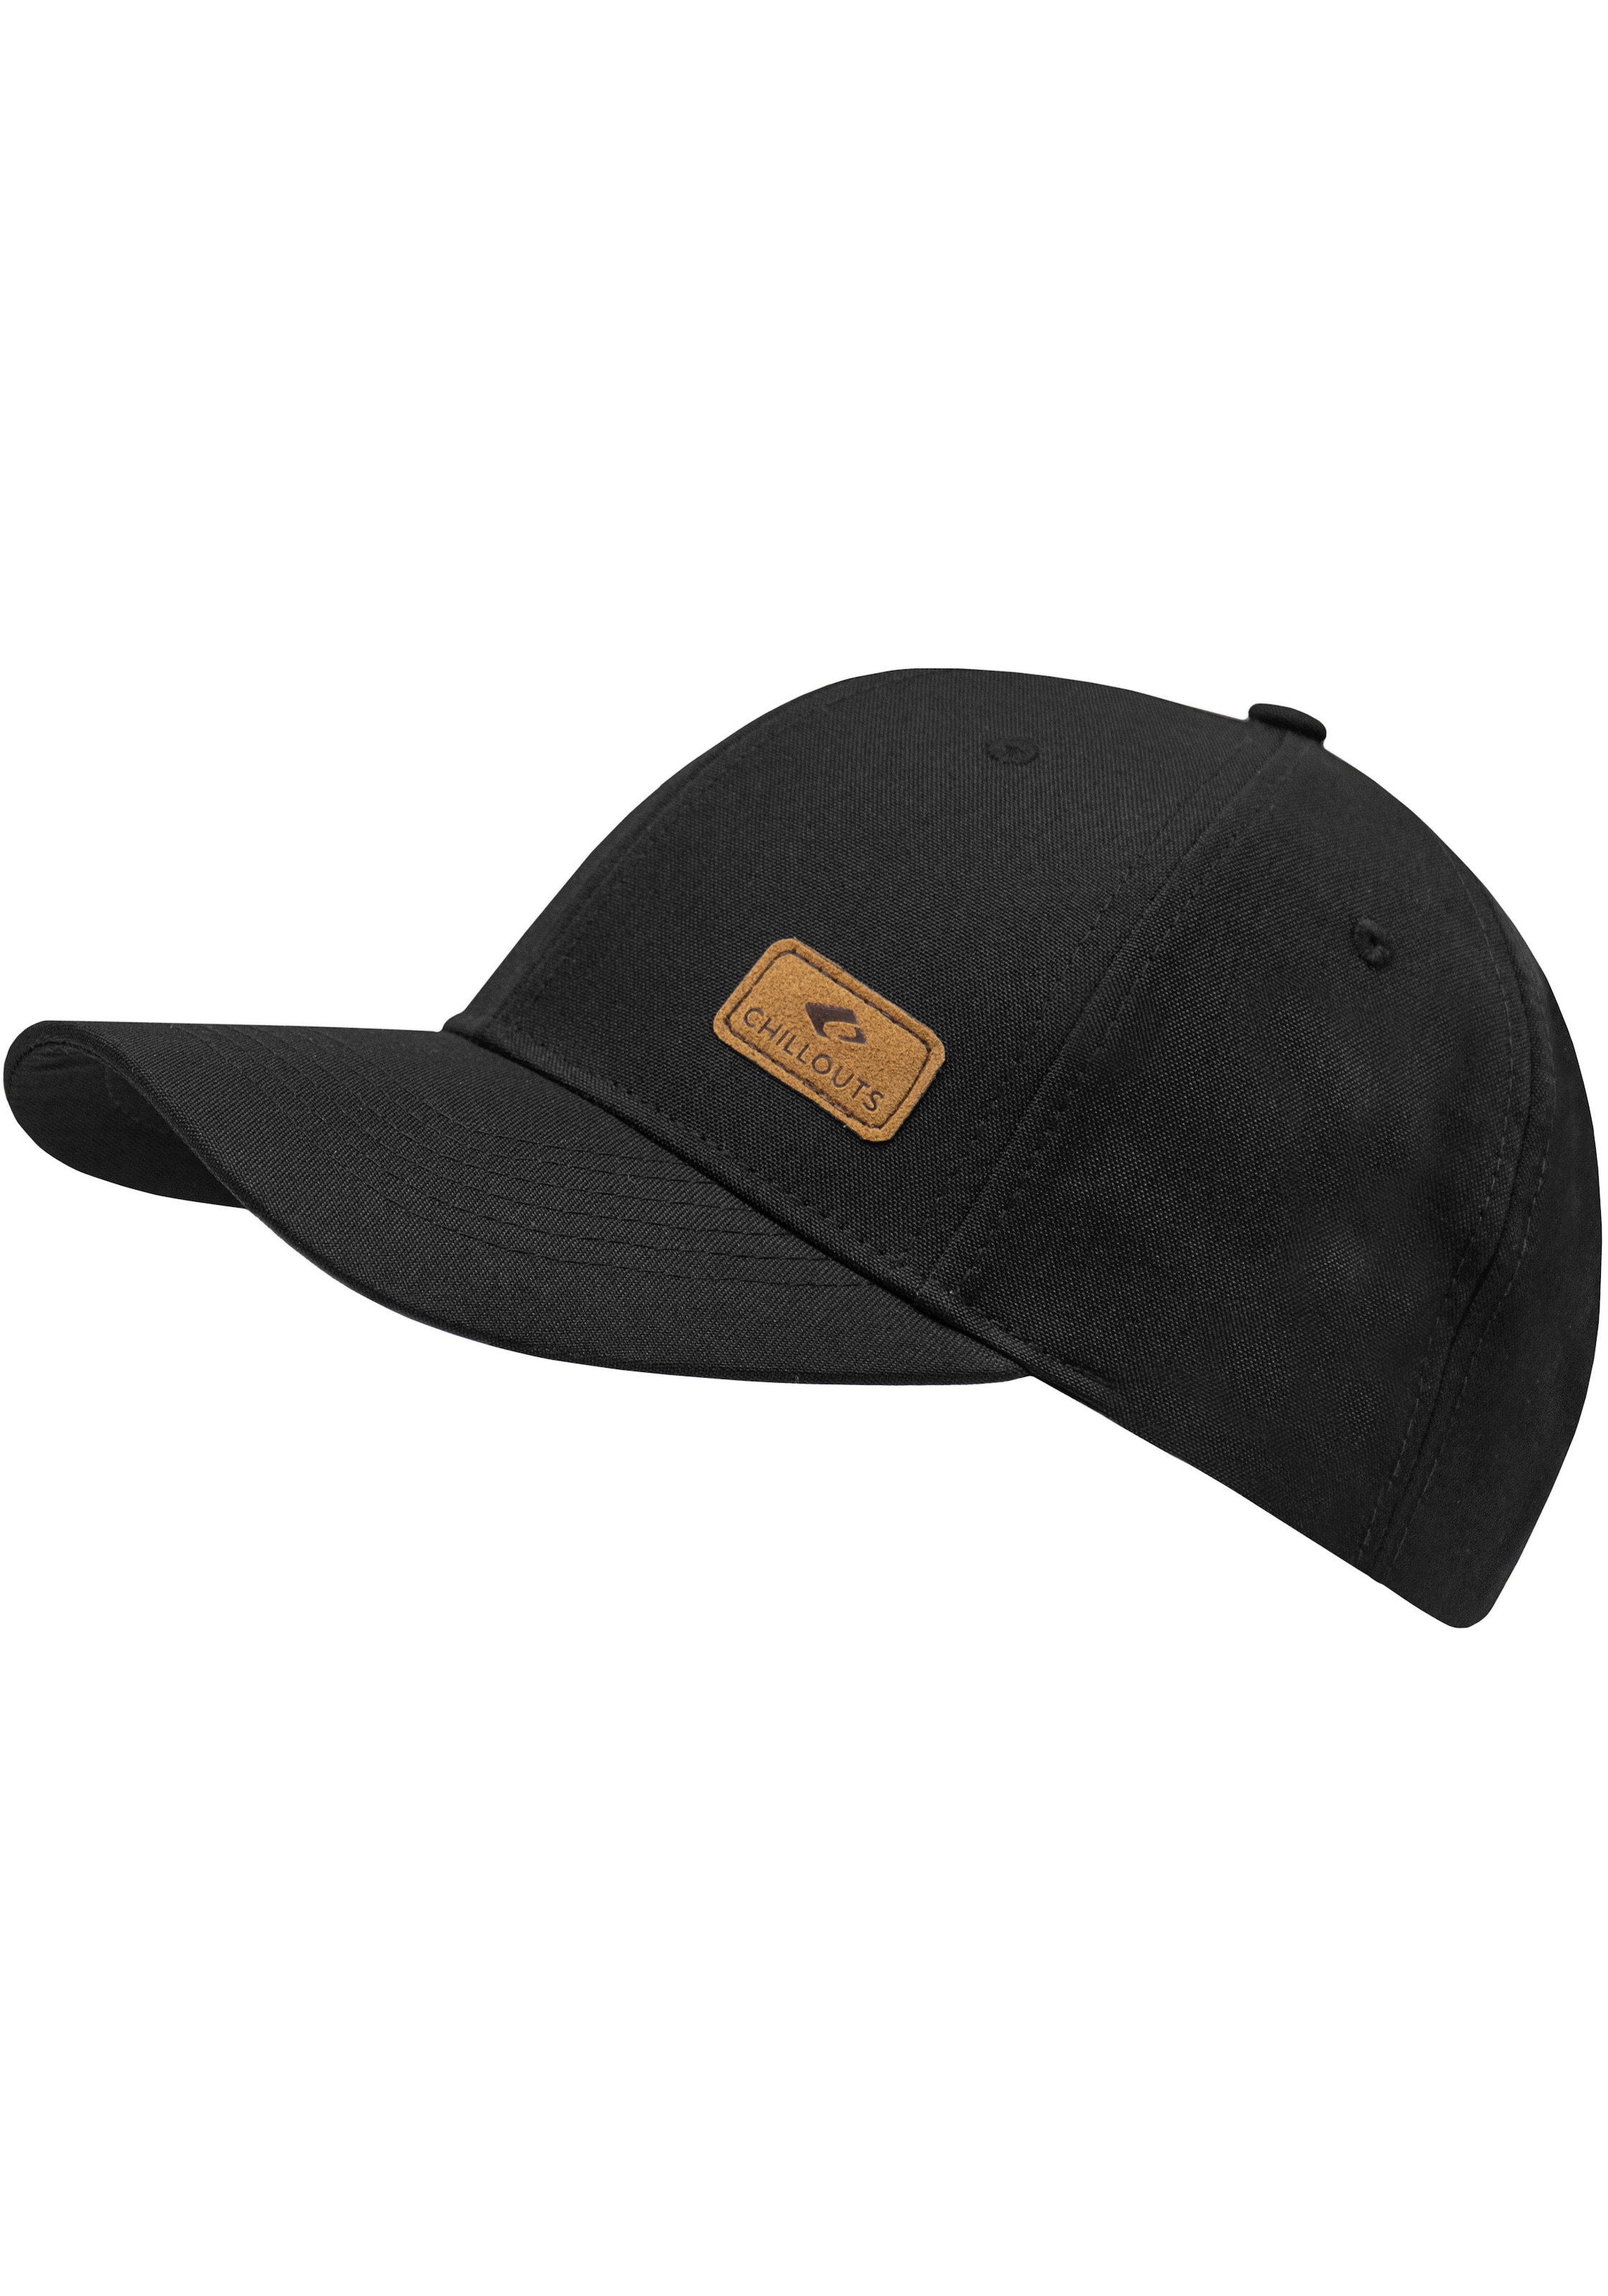 chillouts Baseball Cap, Amadora Hat Optik, Size, kaufen in verstellbar Online-Shop One melierter im